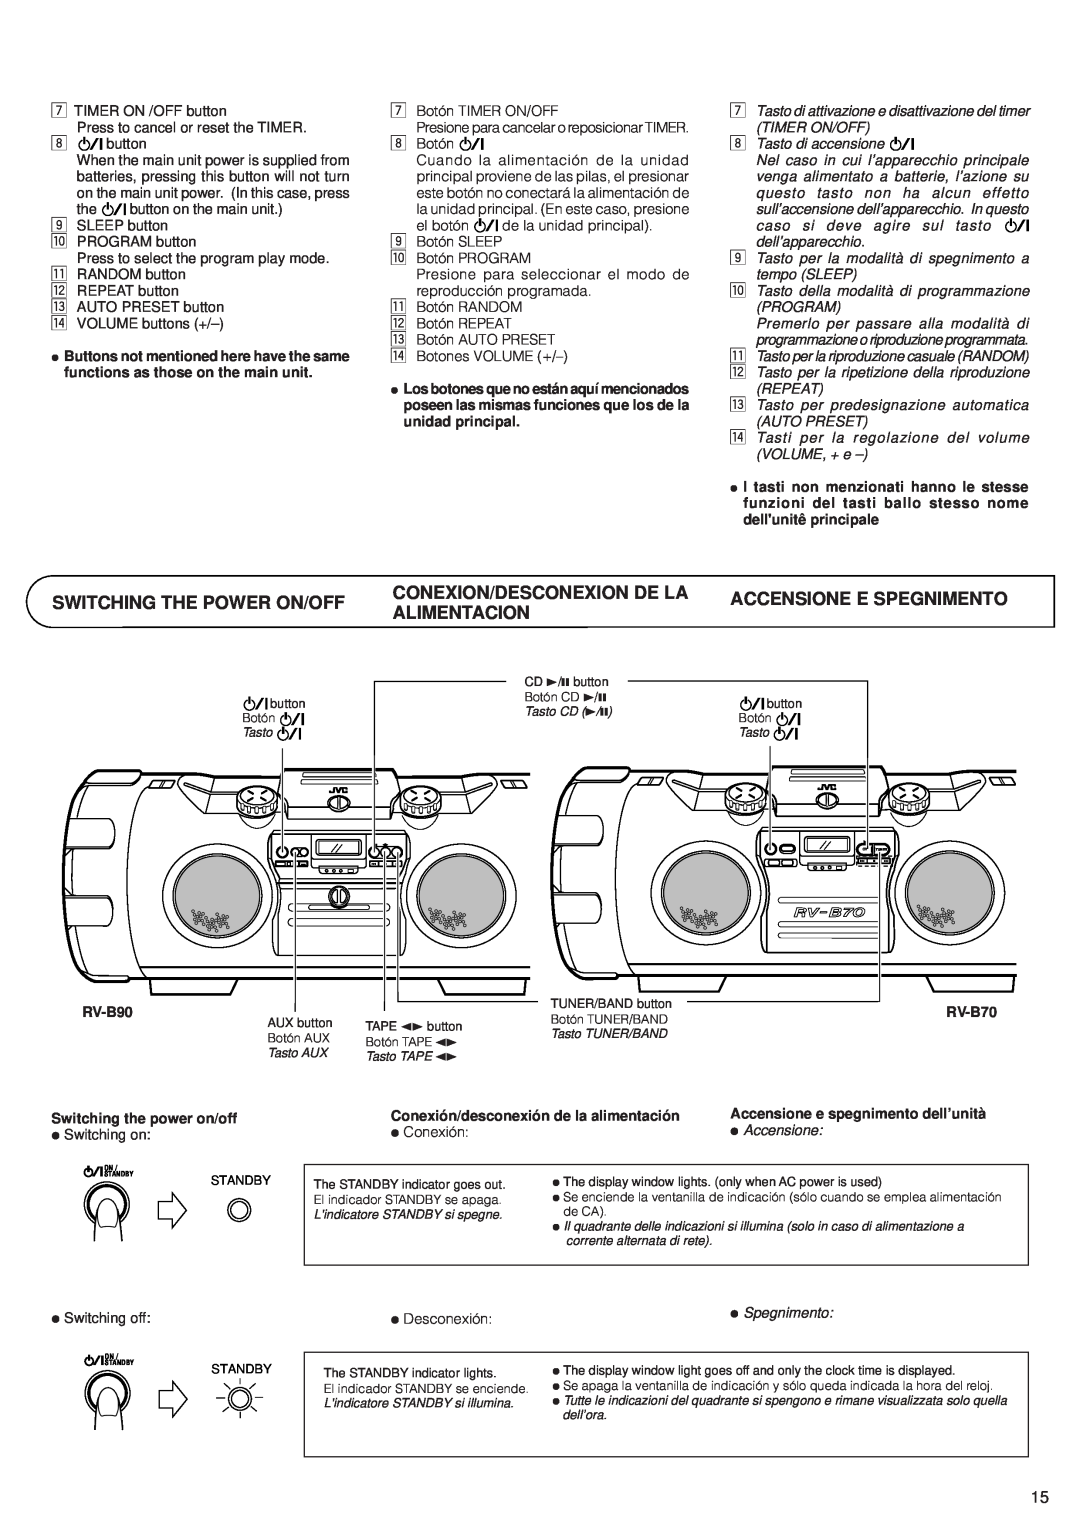 JVC RV-B90, RV-B70 manual Switching The Power On/Off, Conexion/Desconexion De La, Accensione E Spegnimento, Alimentacion 